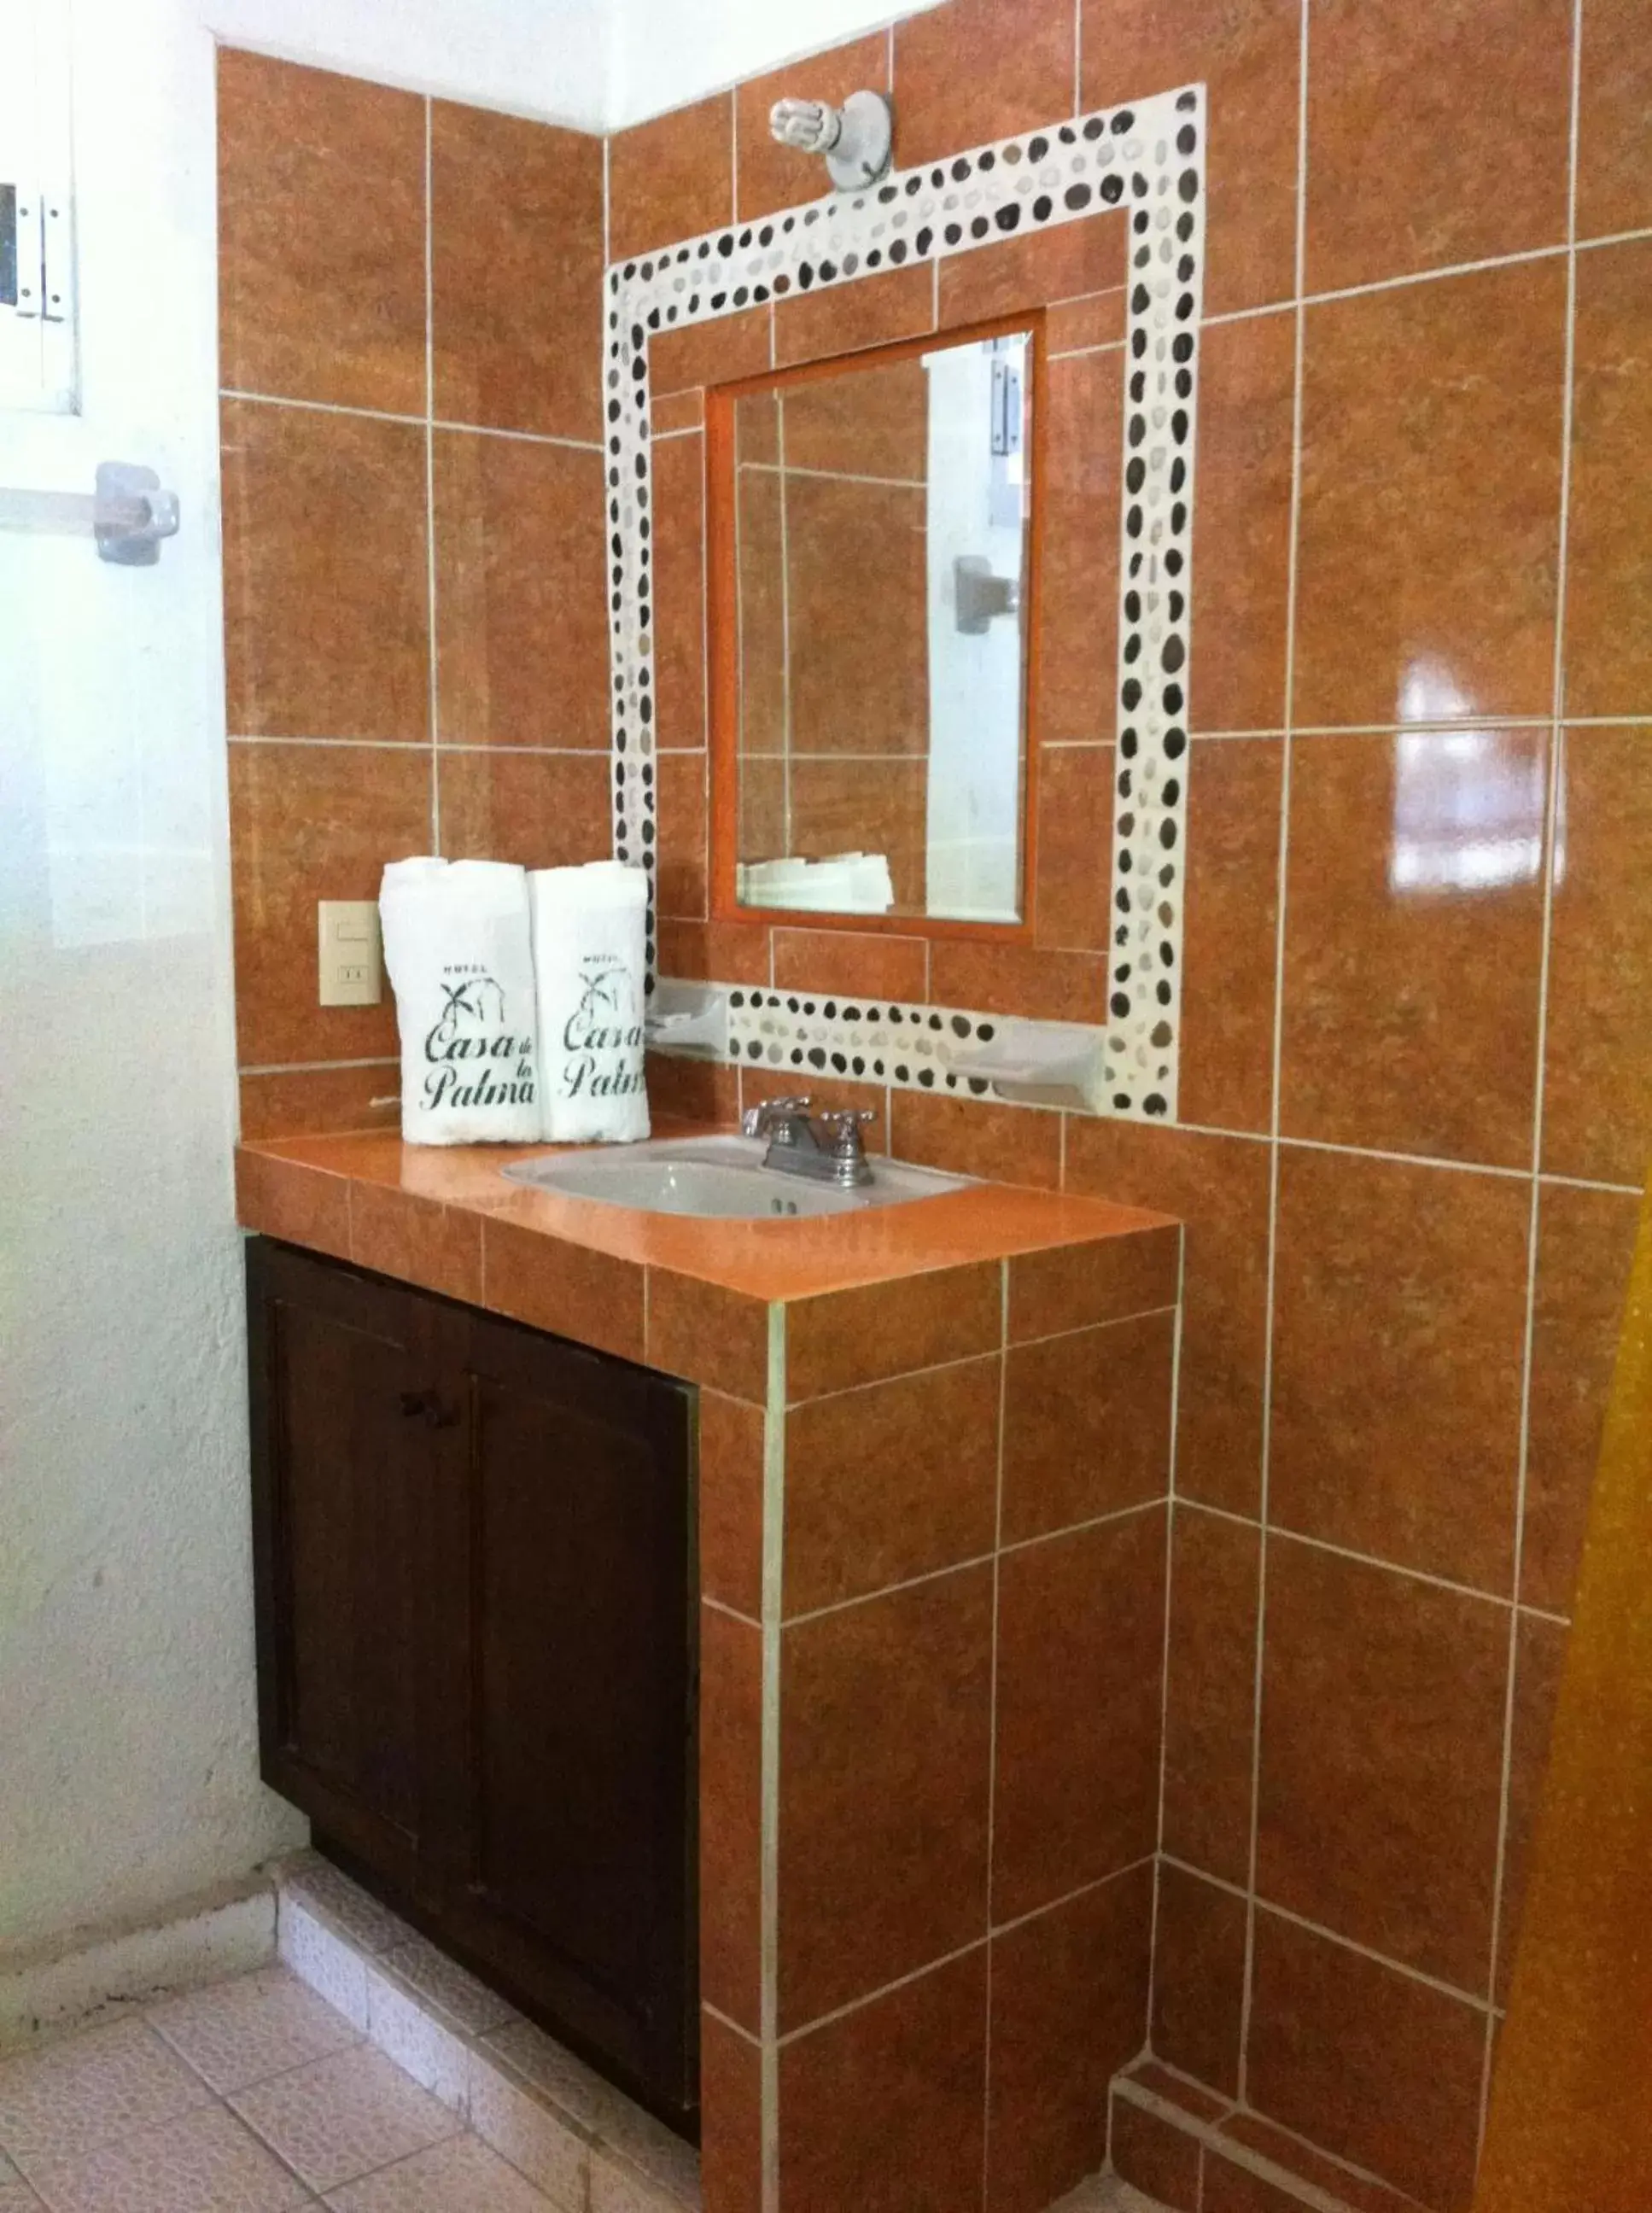 Bathroom in Hotel Casa de la Palma Bed & Breakfast